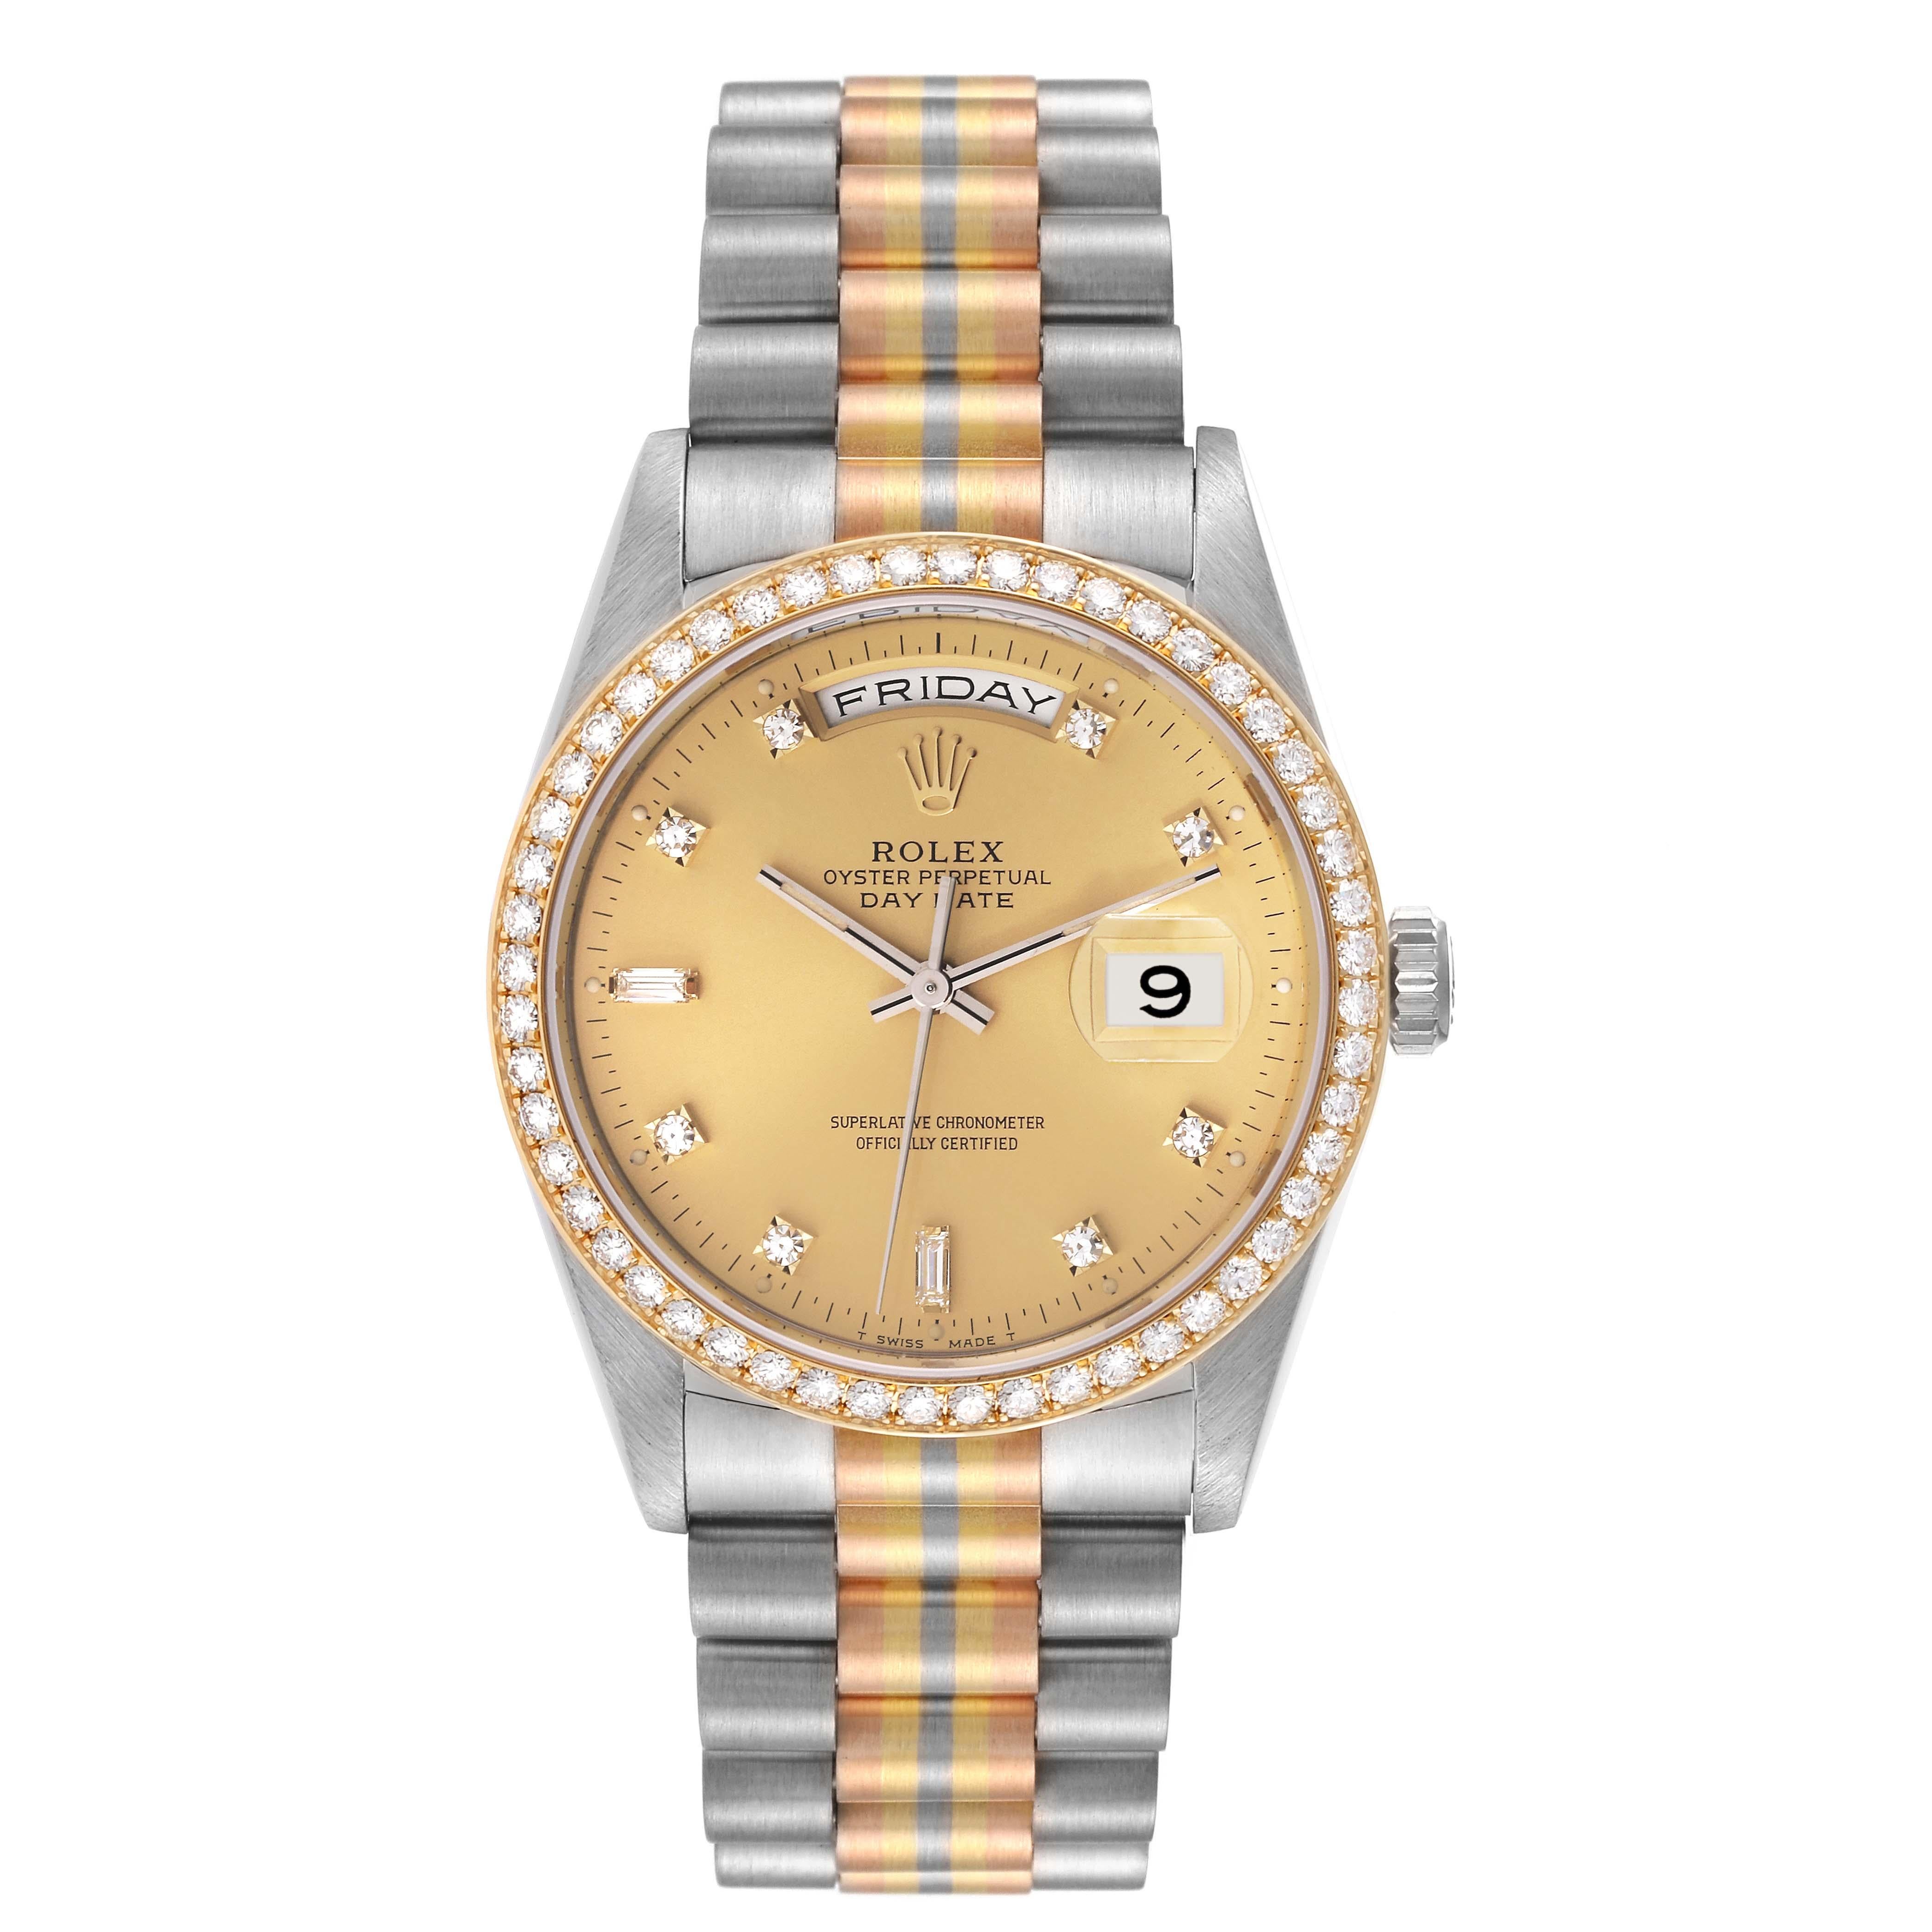 Rolex President Day-Date Tridor White Yellow Rose Gold Diamond Mens Watch 18349. Mouvement à remontage automatique certifié chronomètre avec fonction date à déclenchement rapide. Boîtier en or blanc 18 carats d'un diamètre de 36,0 mm. Logo Rolex sur